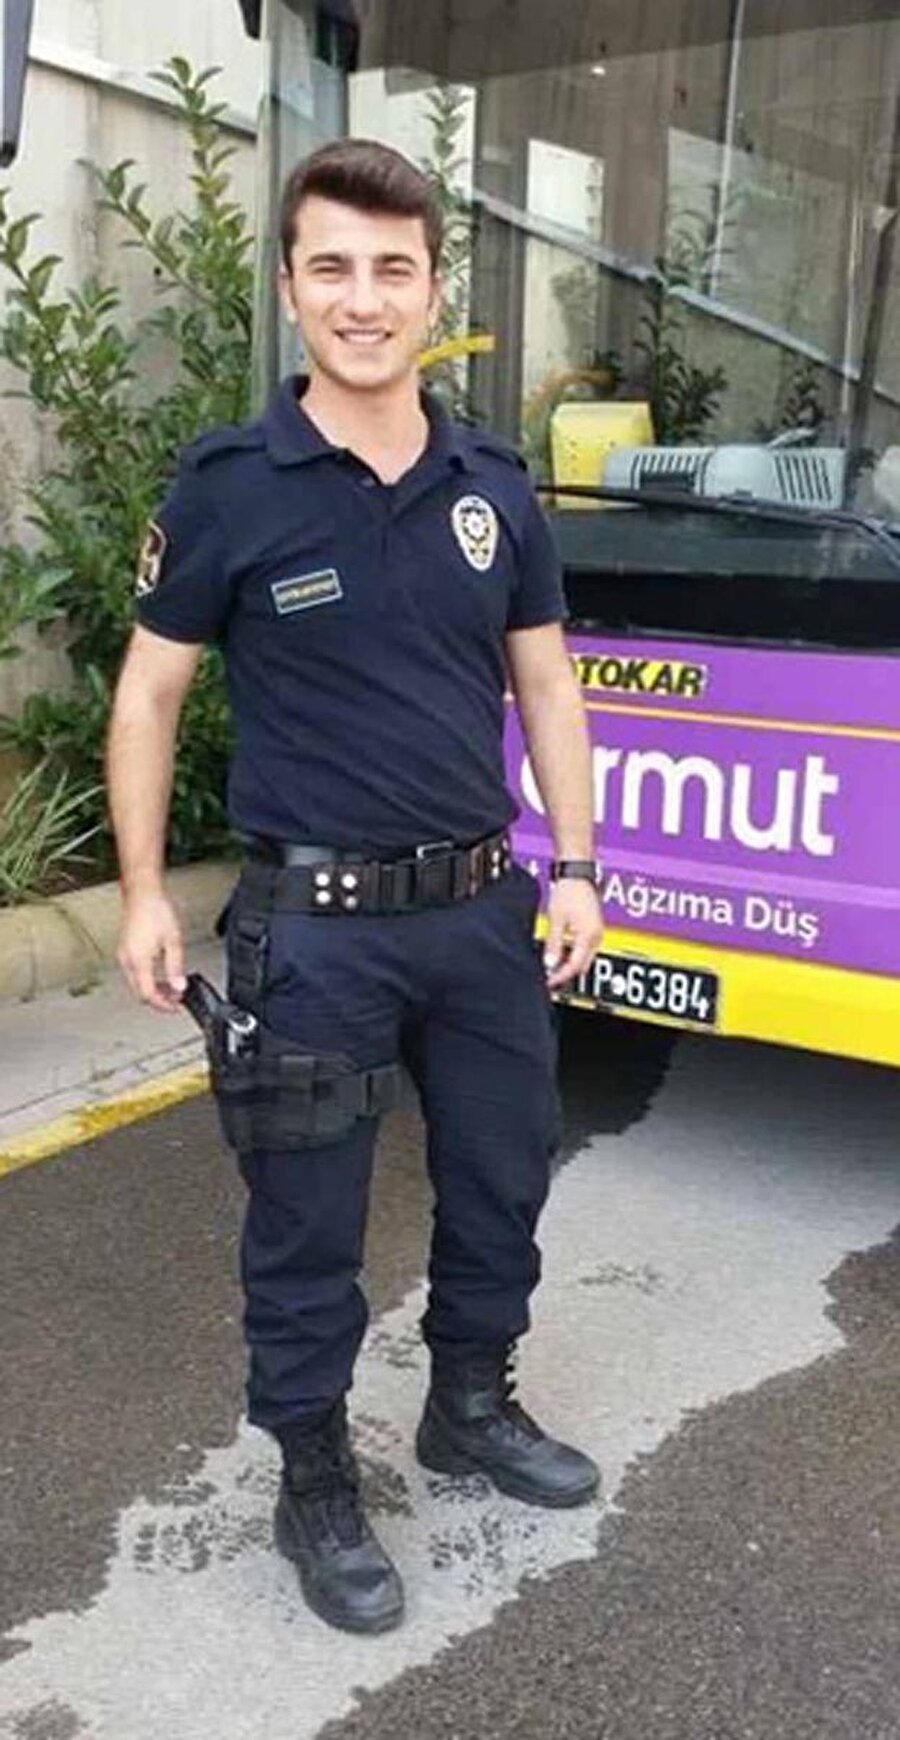 Henüz 21 yaşındaydı
Durmuş Öcal göreve 8 Temmuz'da başlamıştı ve henüz 21 yaşındaydı. 
Beşiktaş'taki Vodafone Arena Stadı'nın hemen yanındaki saldırıda hayatını kaybeden polislerden biriydi o da. 